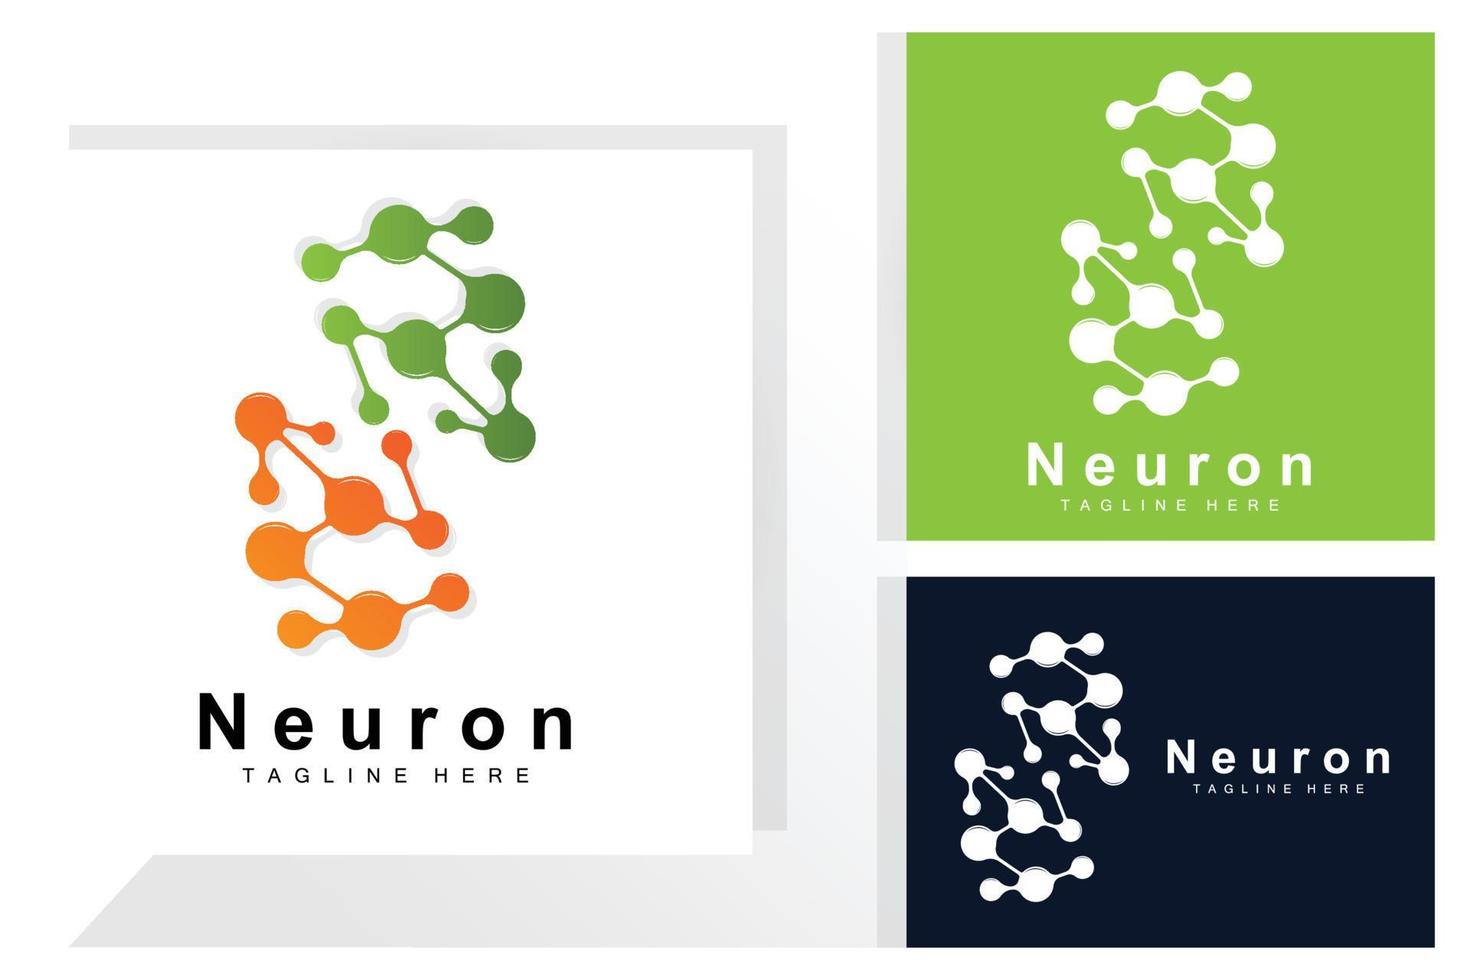 neuron logo ontwerp vector zenuw cel illustratie moleculair dna Gezondheid merk